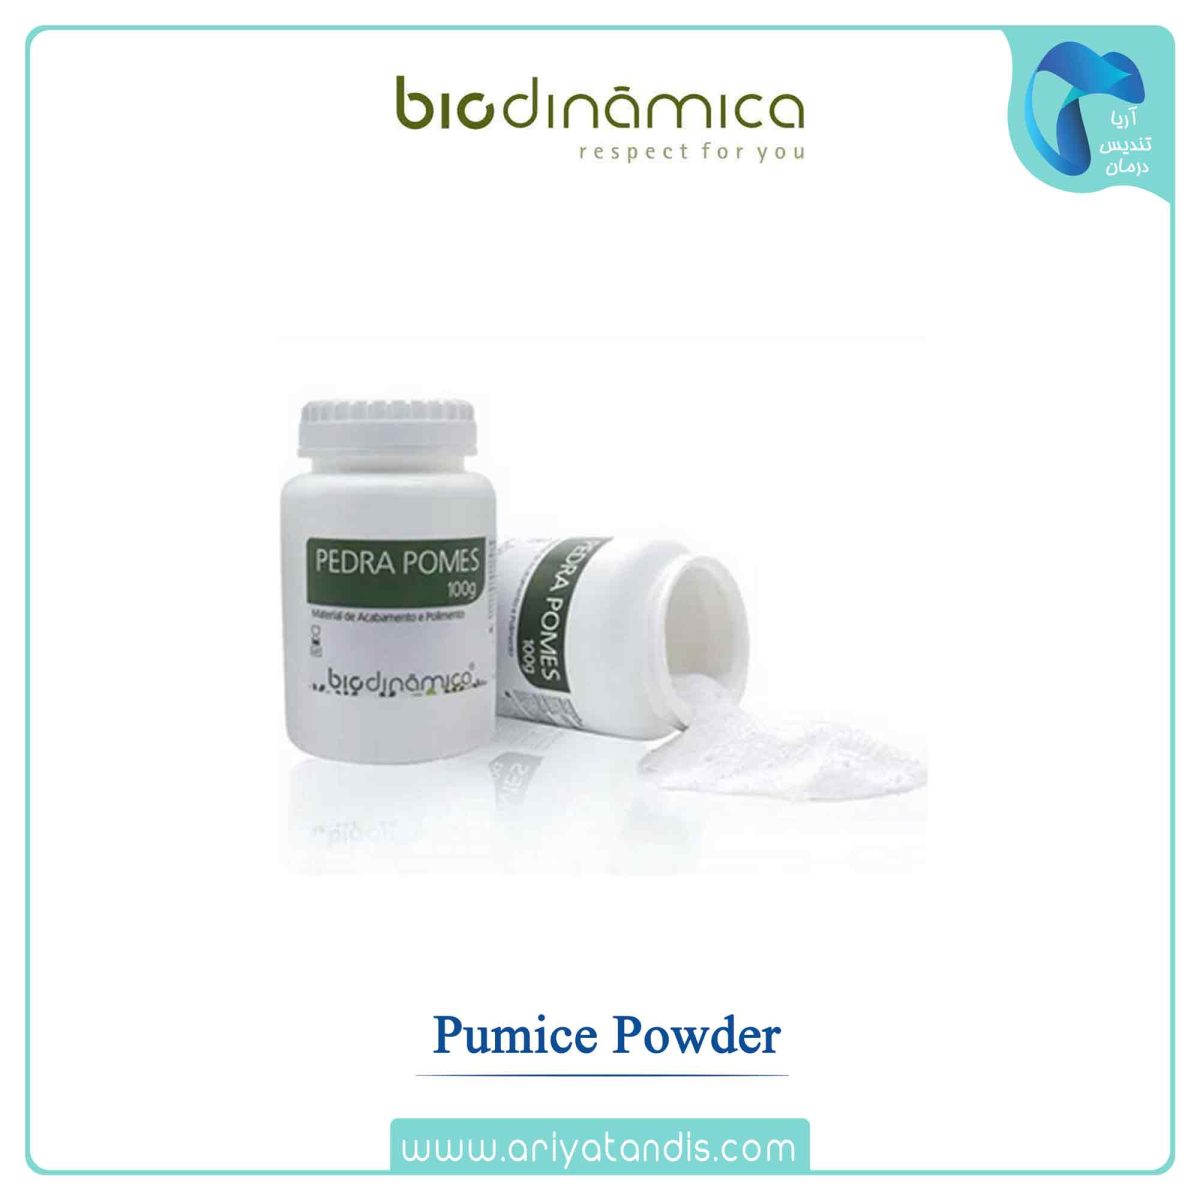 قیمت پودر پالیش پامیس بایوداینامیکا ، Biodinamica Pumice Powder